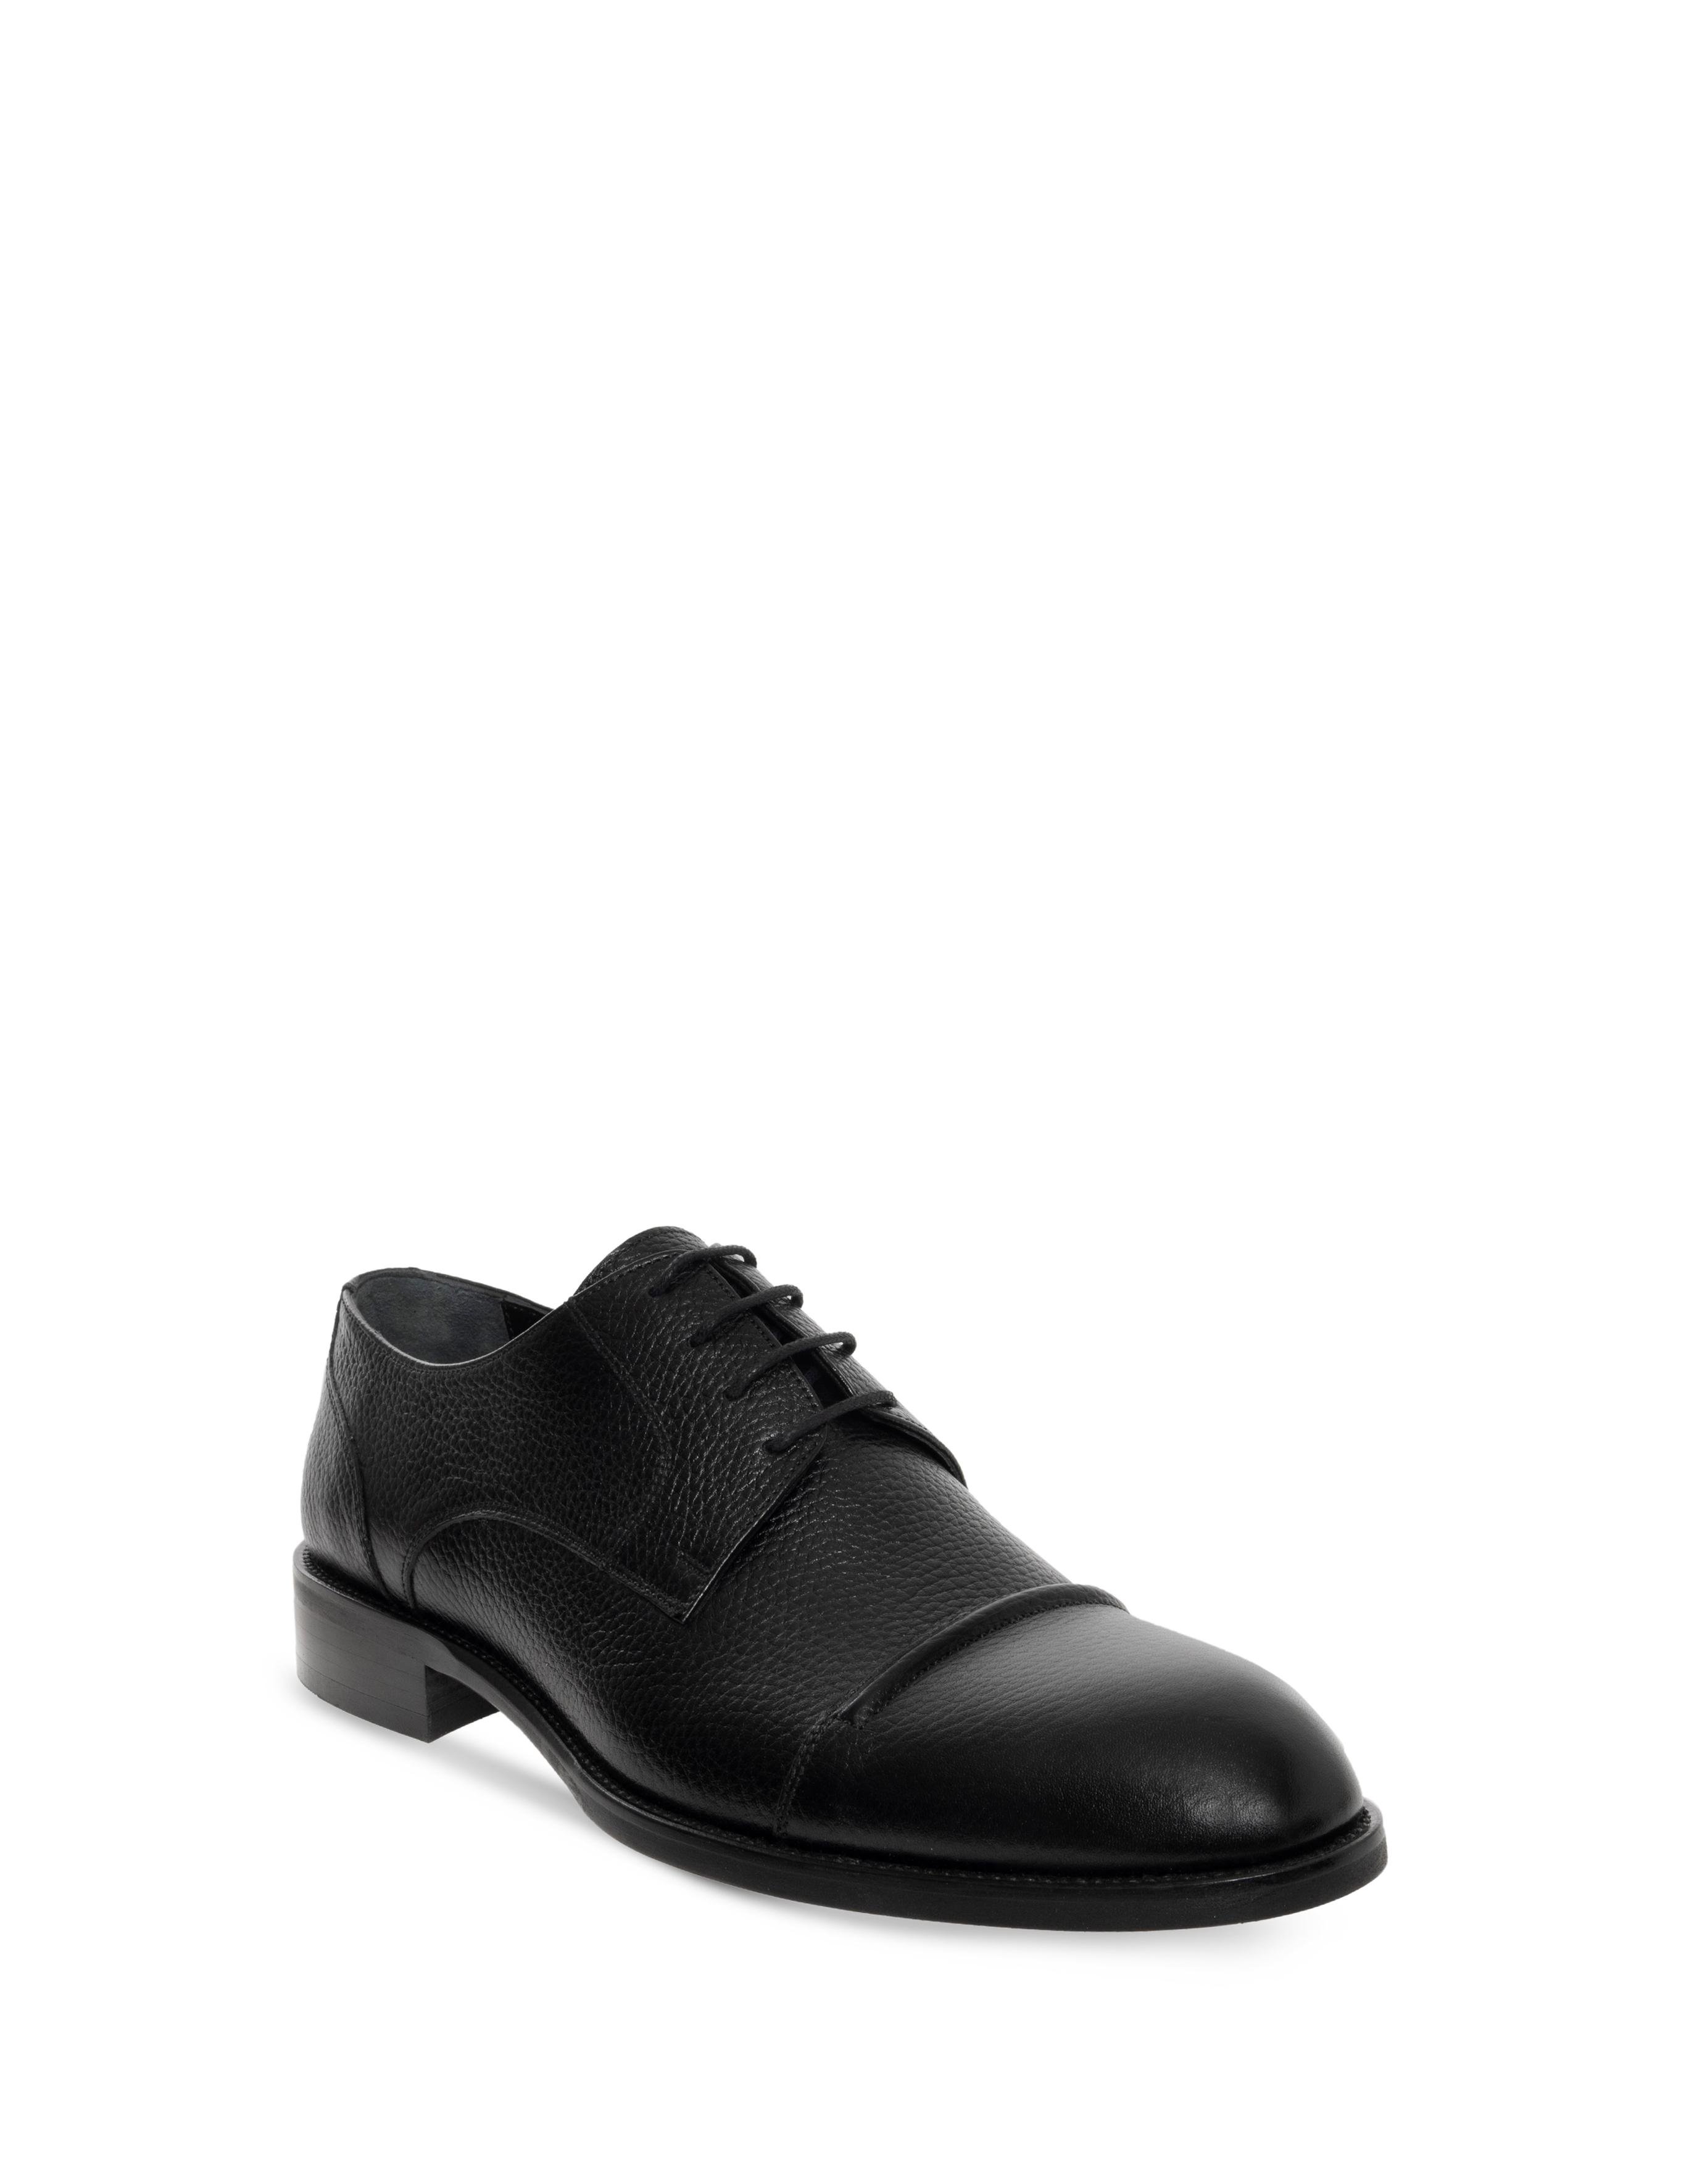 Siyah Klasik Ayakkabı - 50276615031